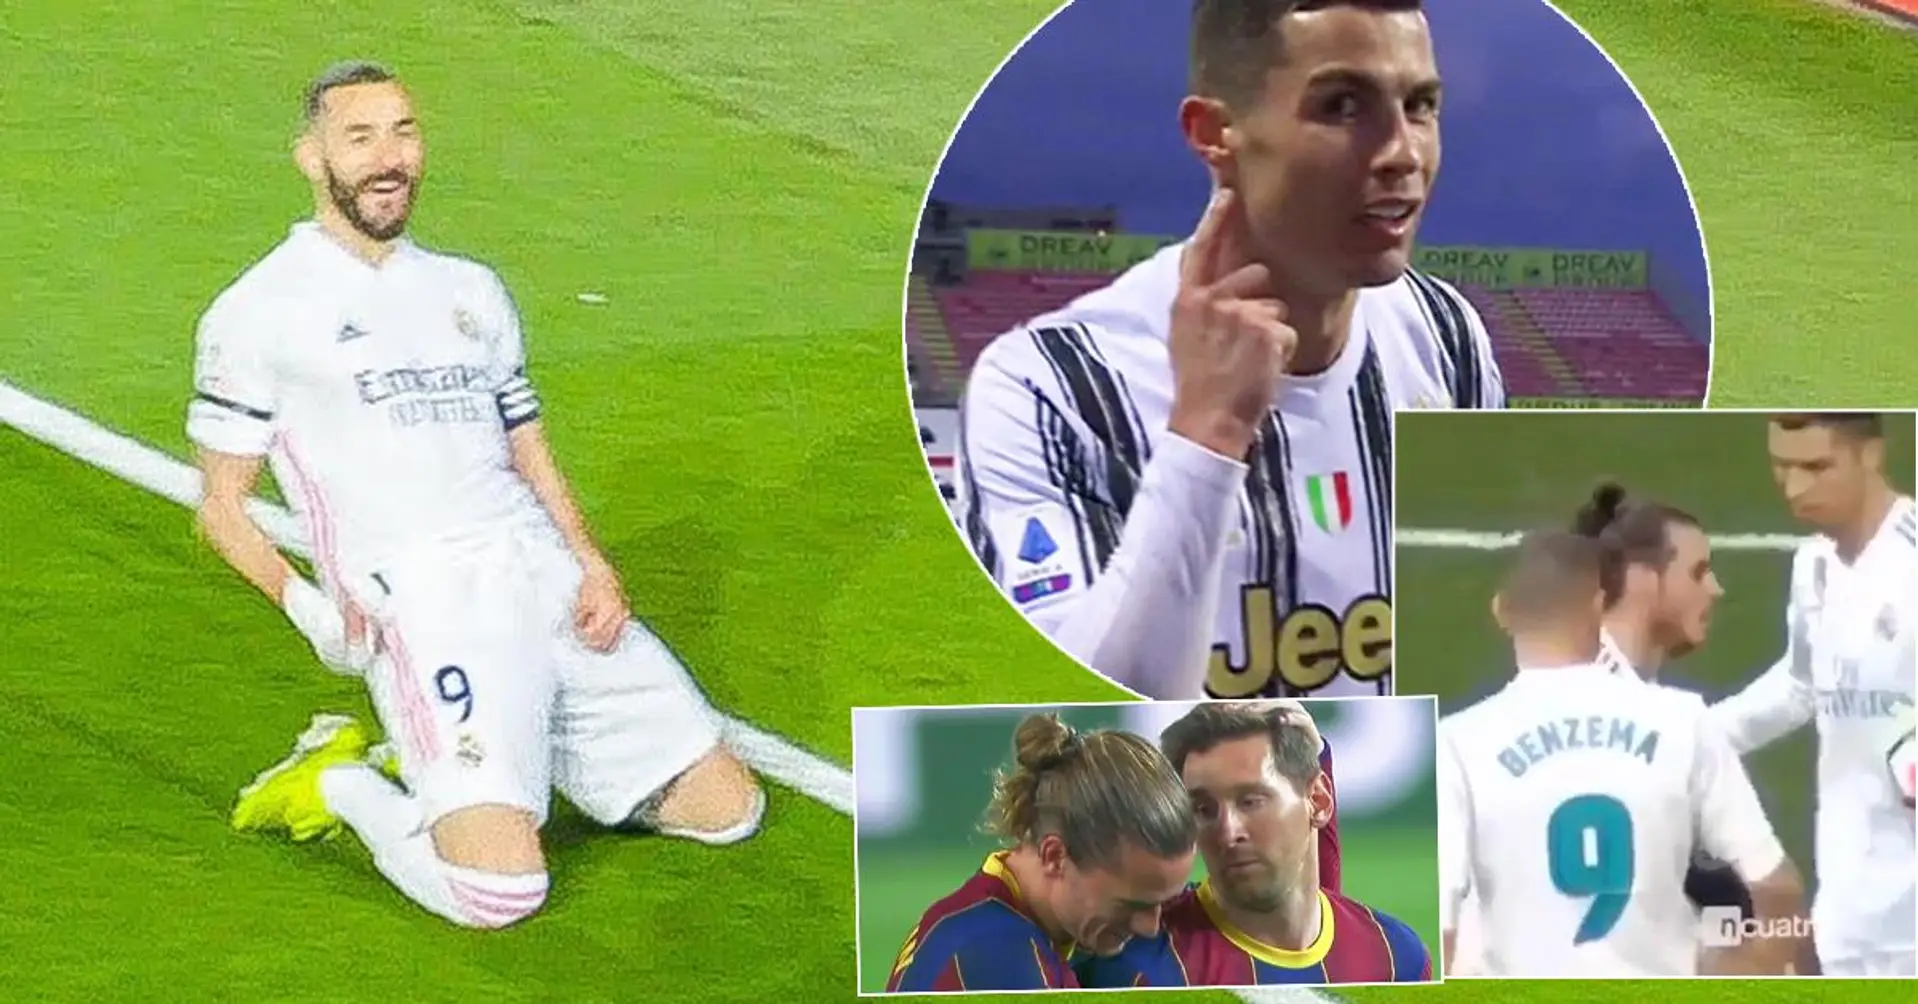 "Leo Messi tritt in die Fußstapfen von CR7": Video von Cristianos selbstloser Geste gegenüber Benzema geht viral